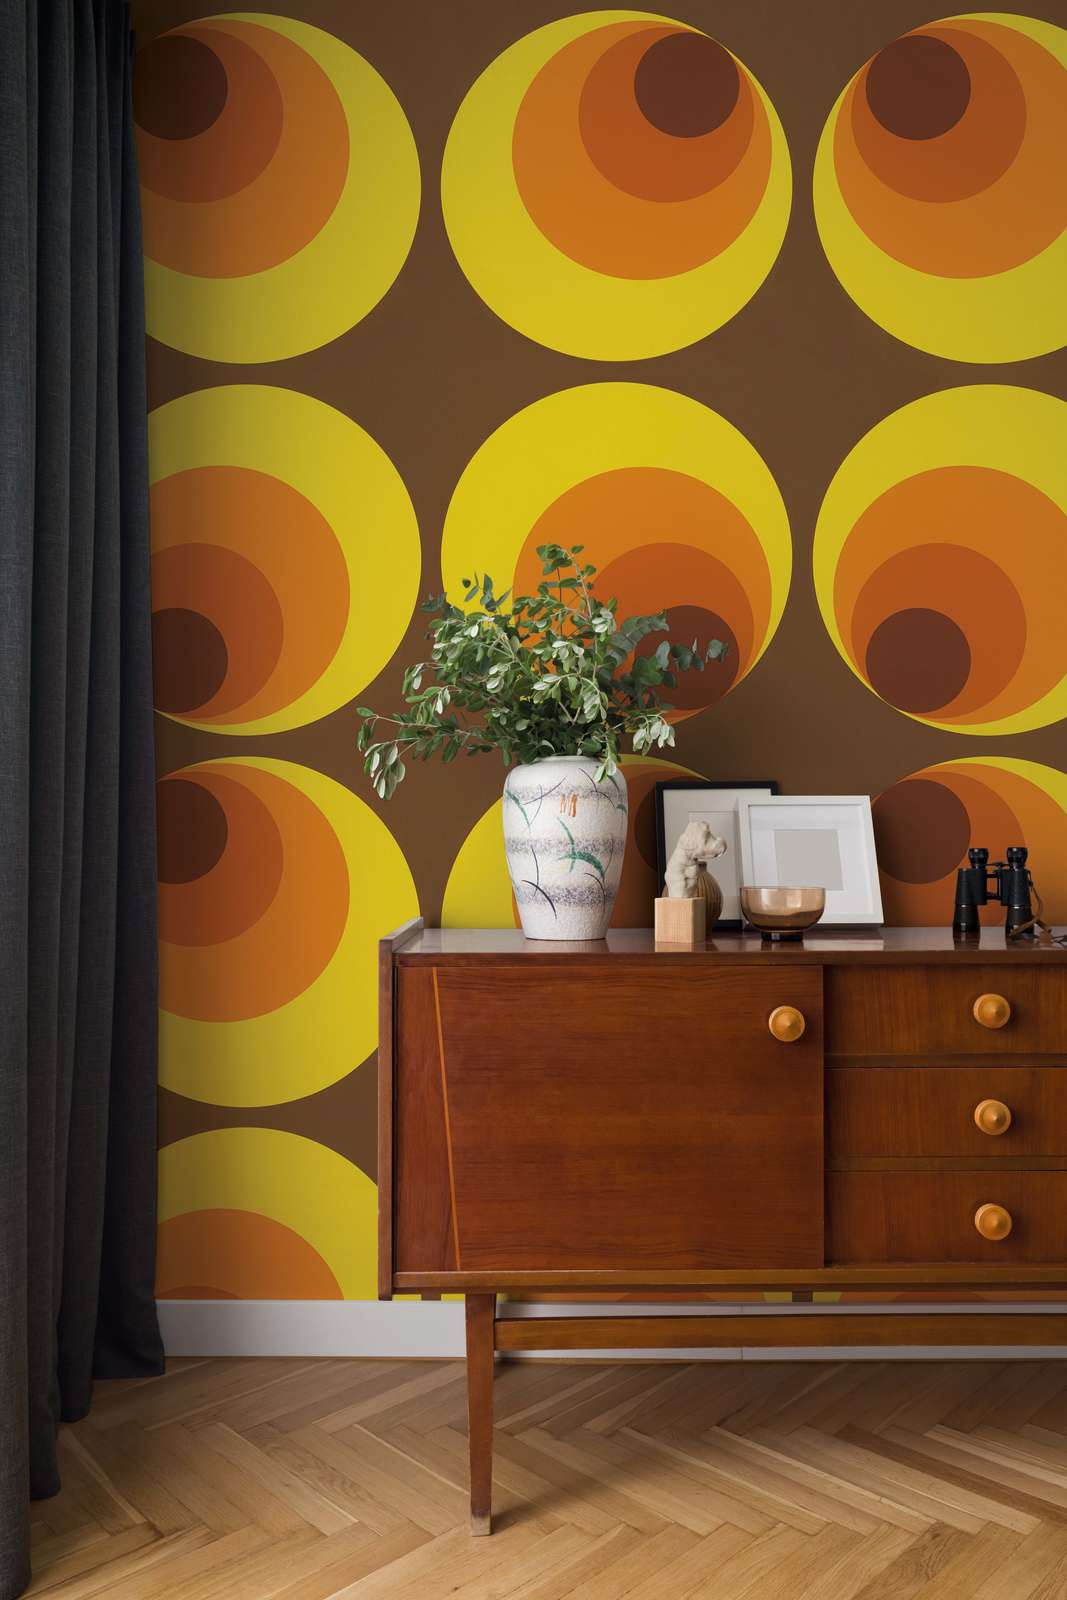             Vintage Tapete mit Retro Design – Braun, Gelb, Orange
        